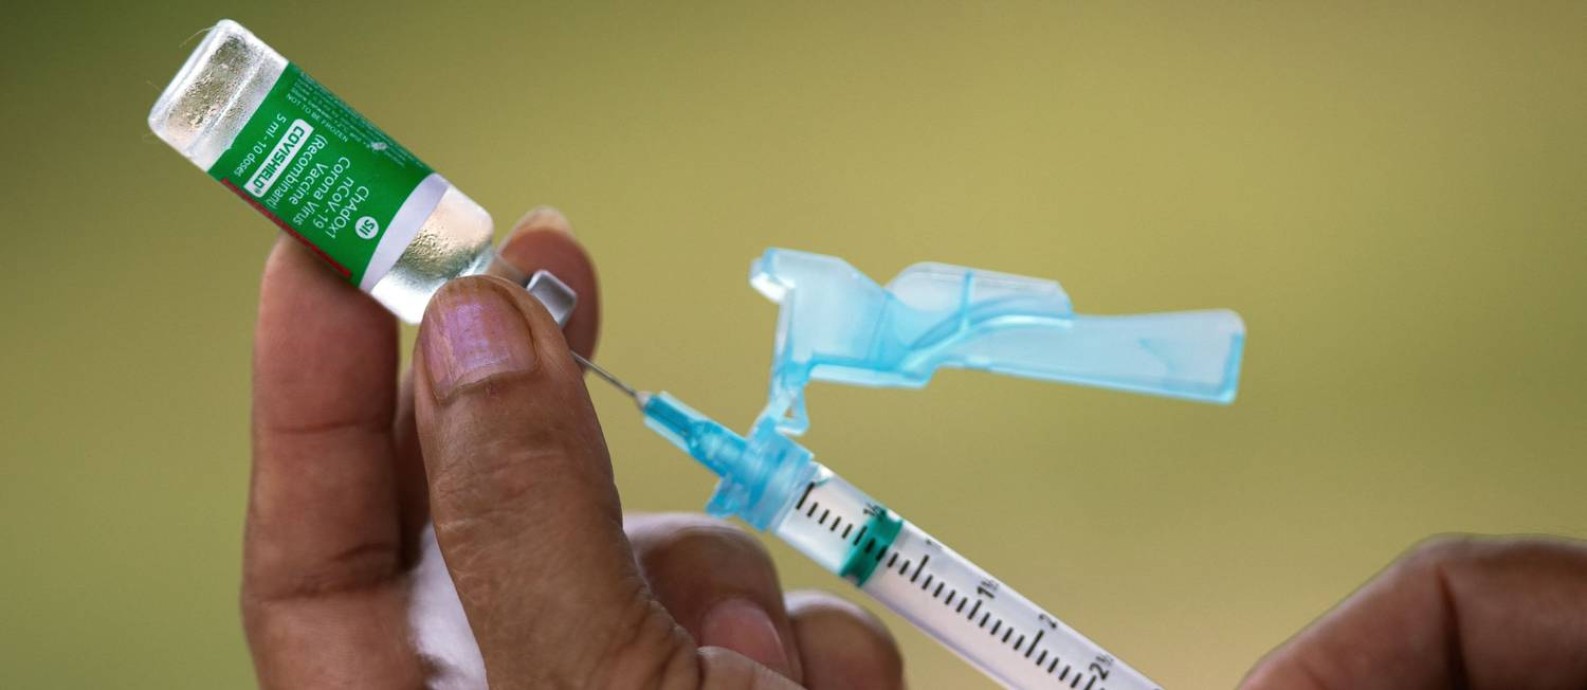 Brasil ultrapassa EUA em taxa de vacinação completa contra a Covid